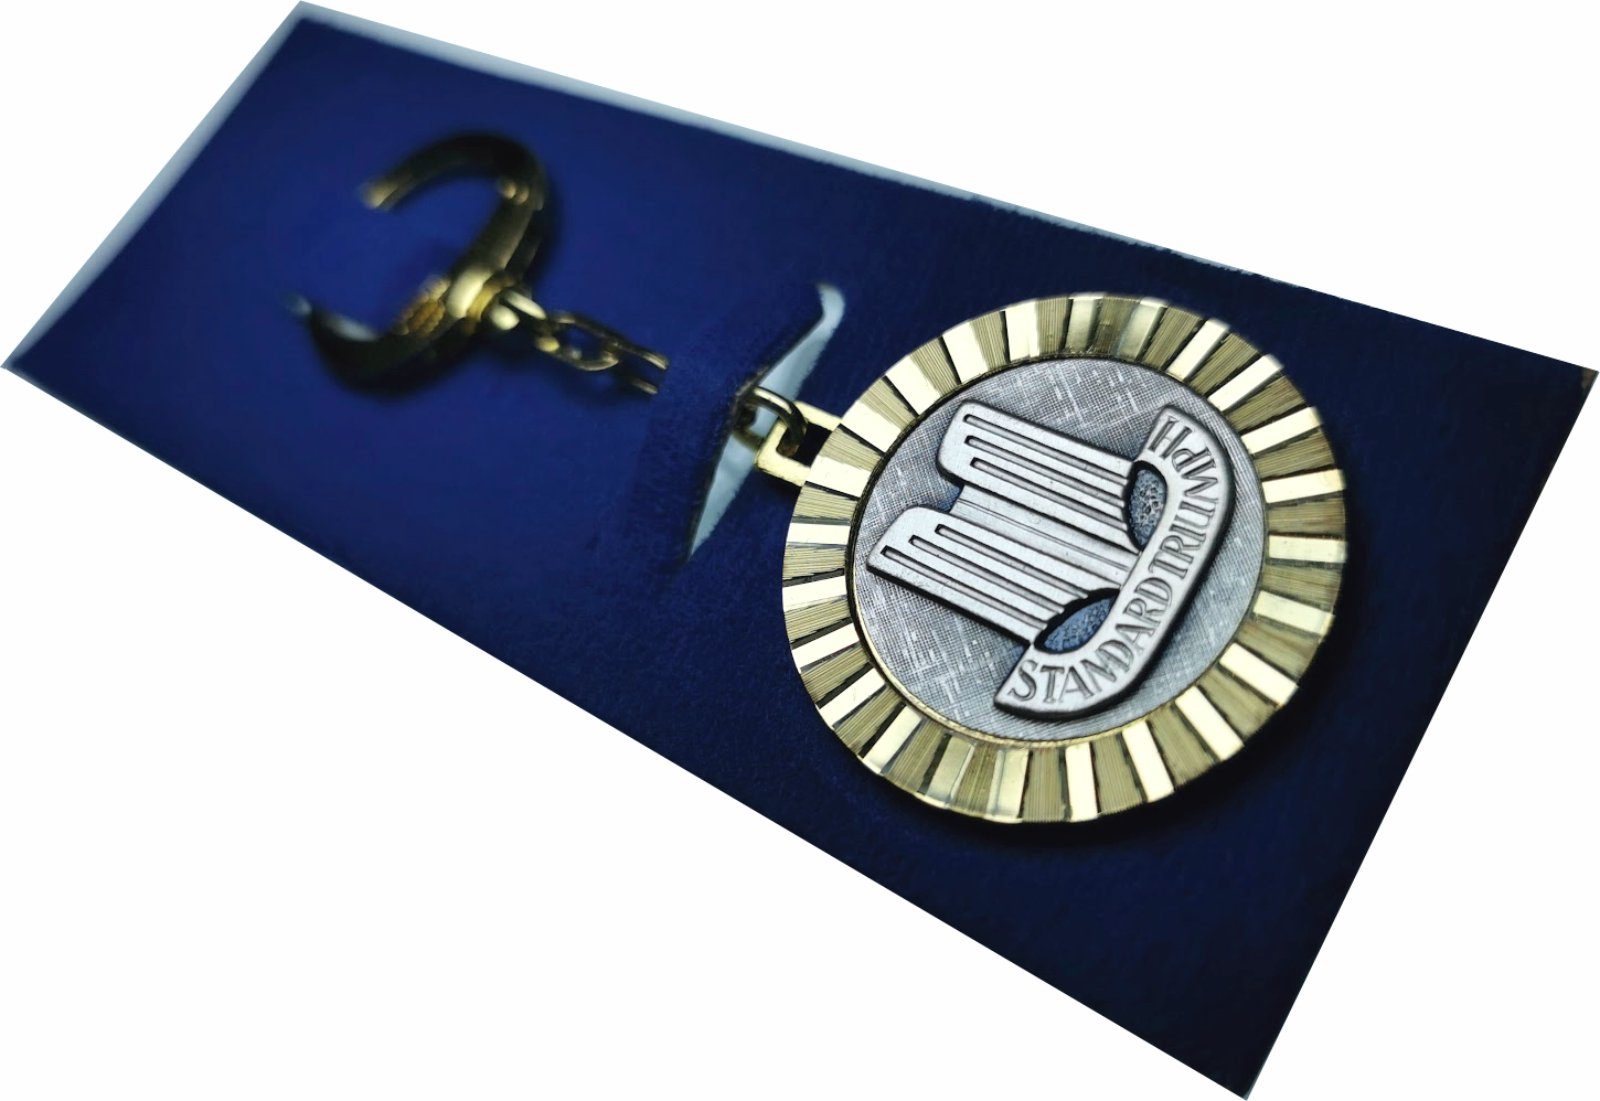 Diamantschliff STANDARD Schlüsselanhänger Metall HR TRIUMPH Autocomfort Schlüsselanhänger 1958 orig. Anhänger